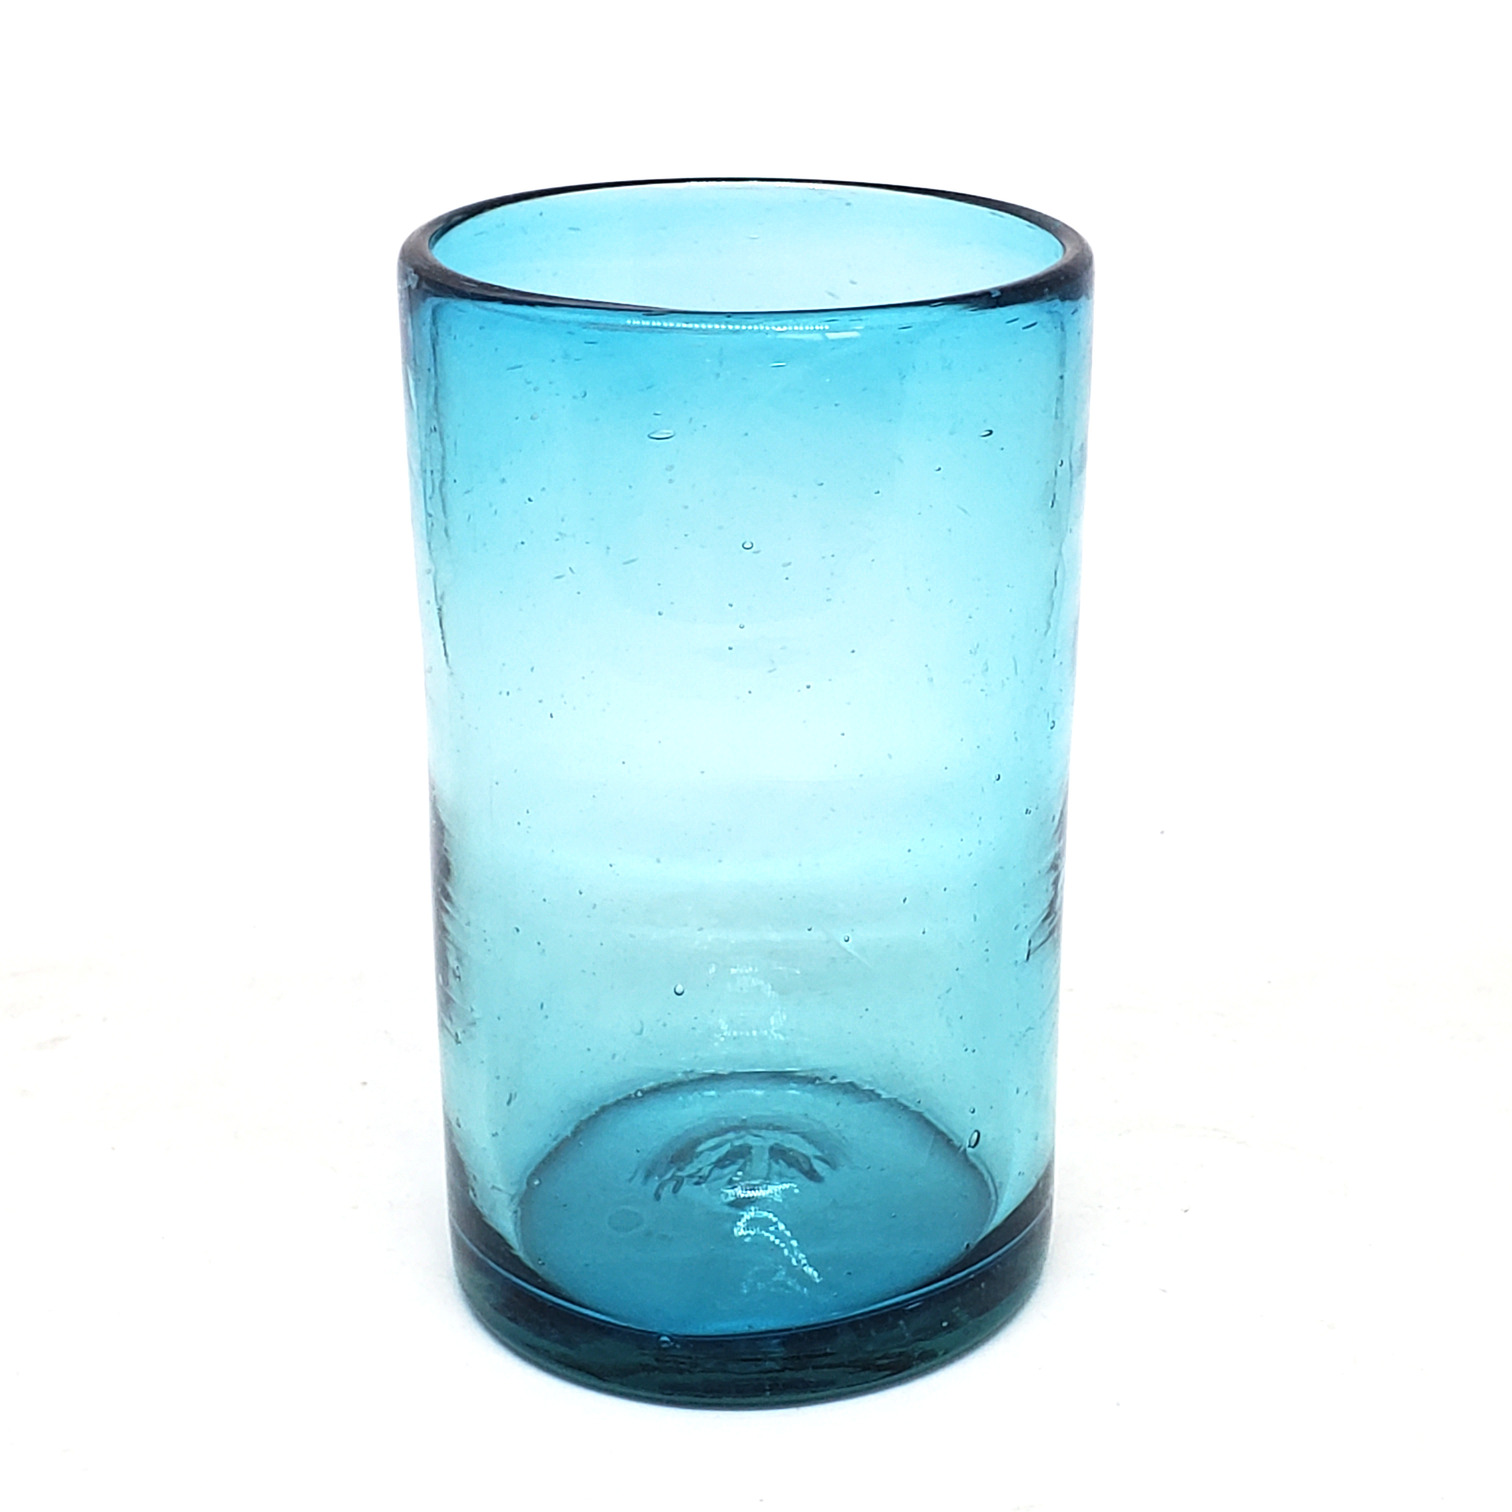 Ofertas / vasos grandes color azul aqua / �stos artesanales vasos le dar�n un toque cl�sico a su bebida favorita.